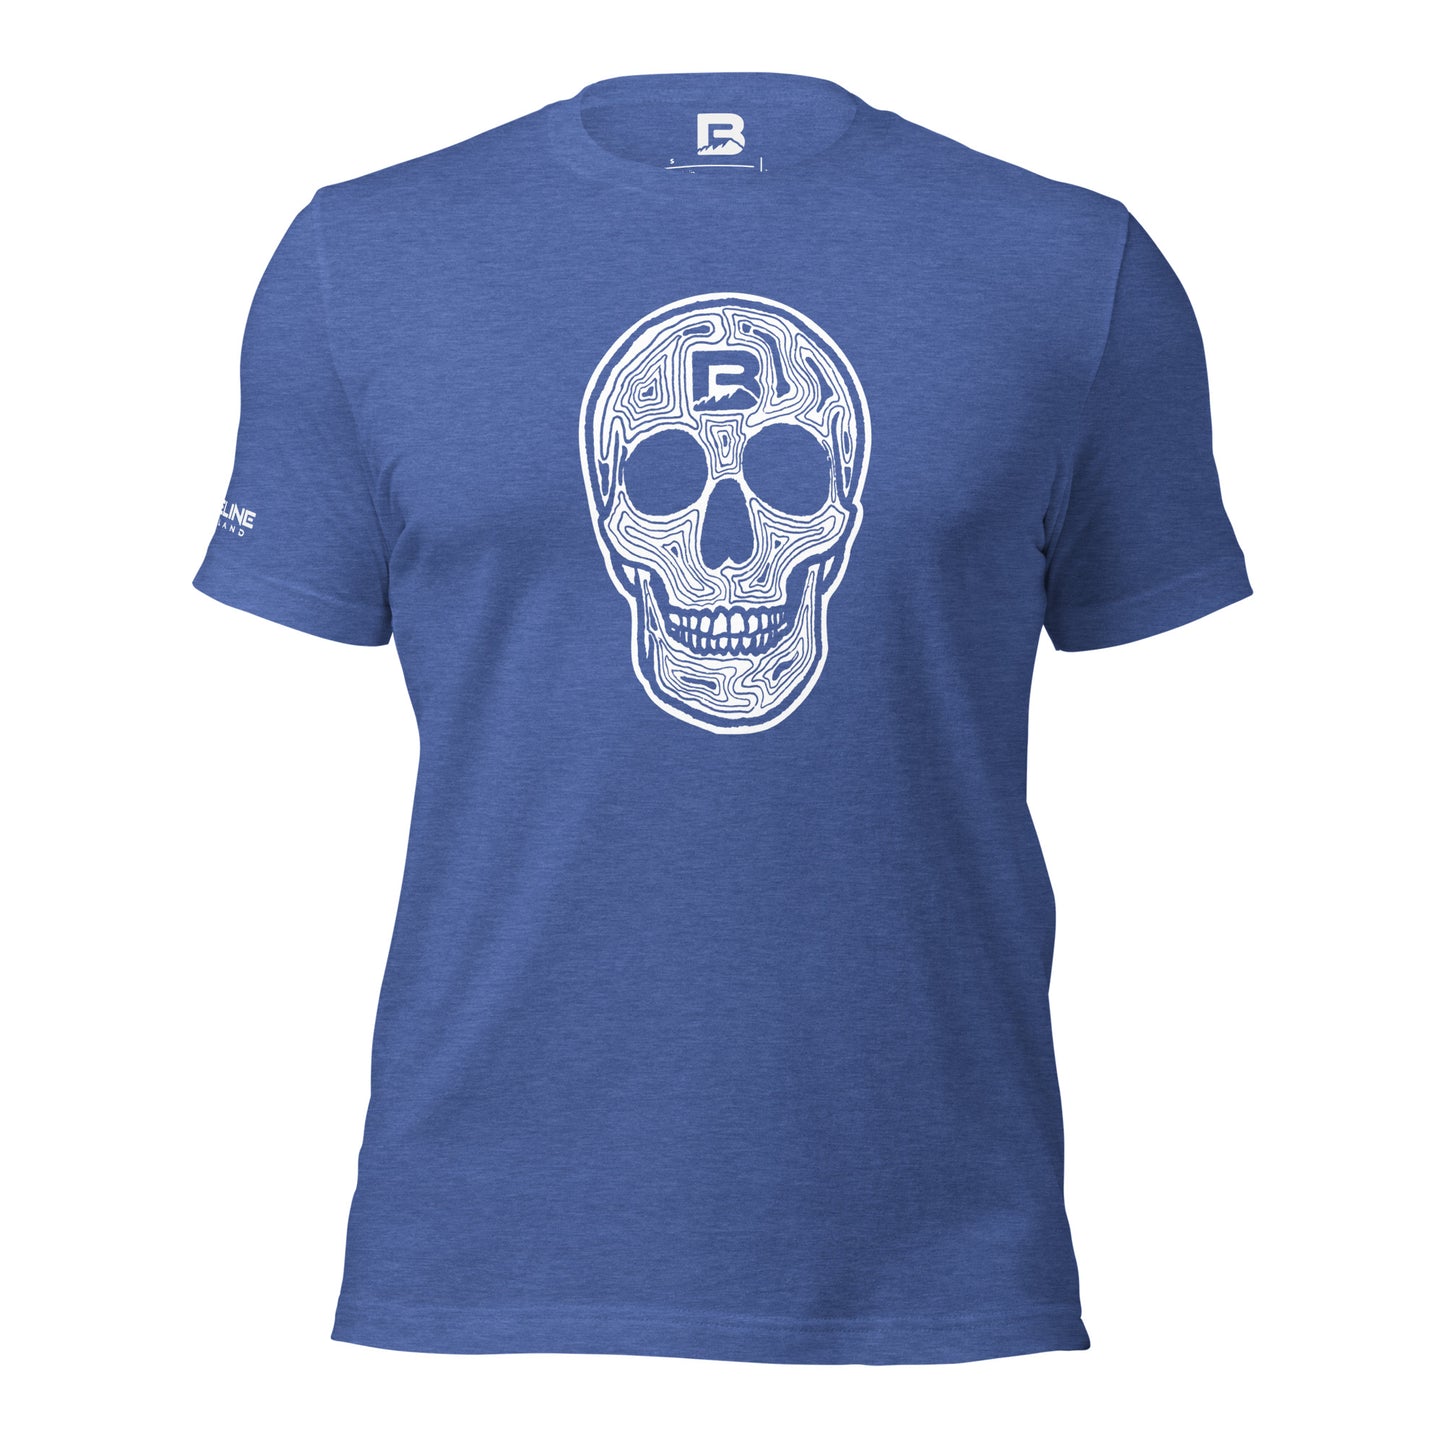 Baseline Overland Topo Skull Unisex t-shirt